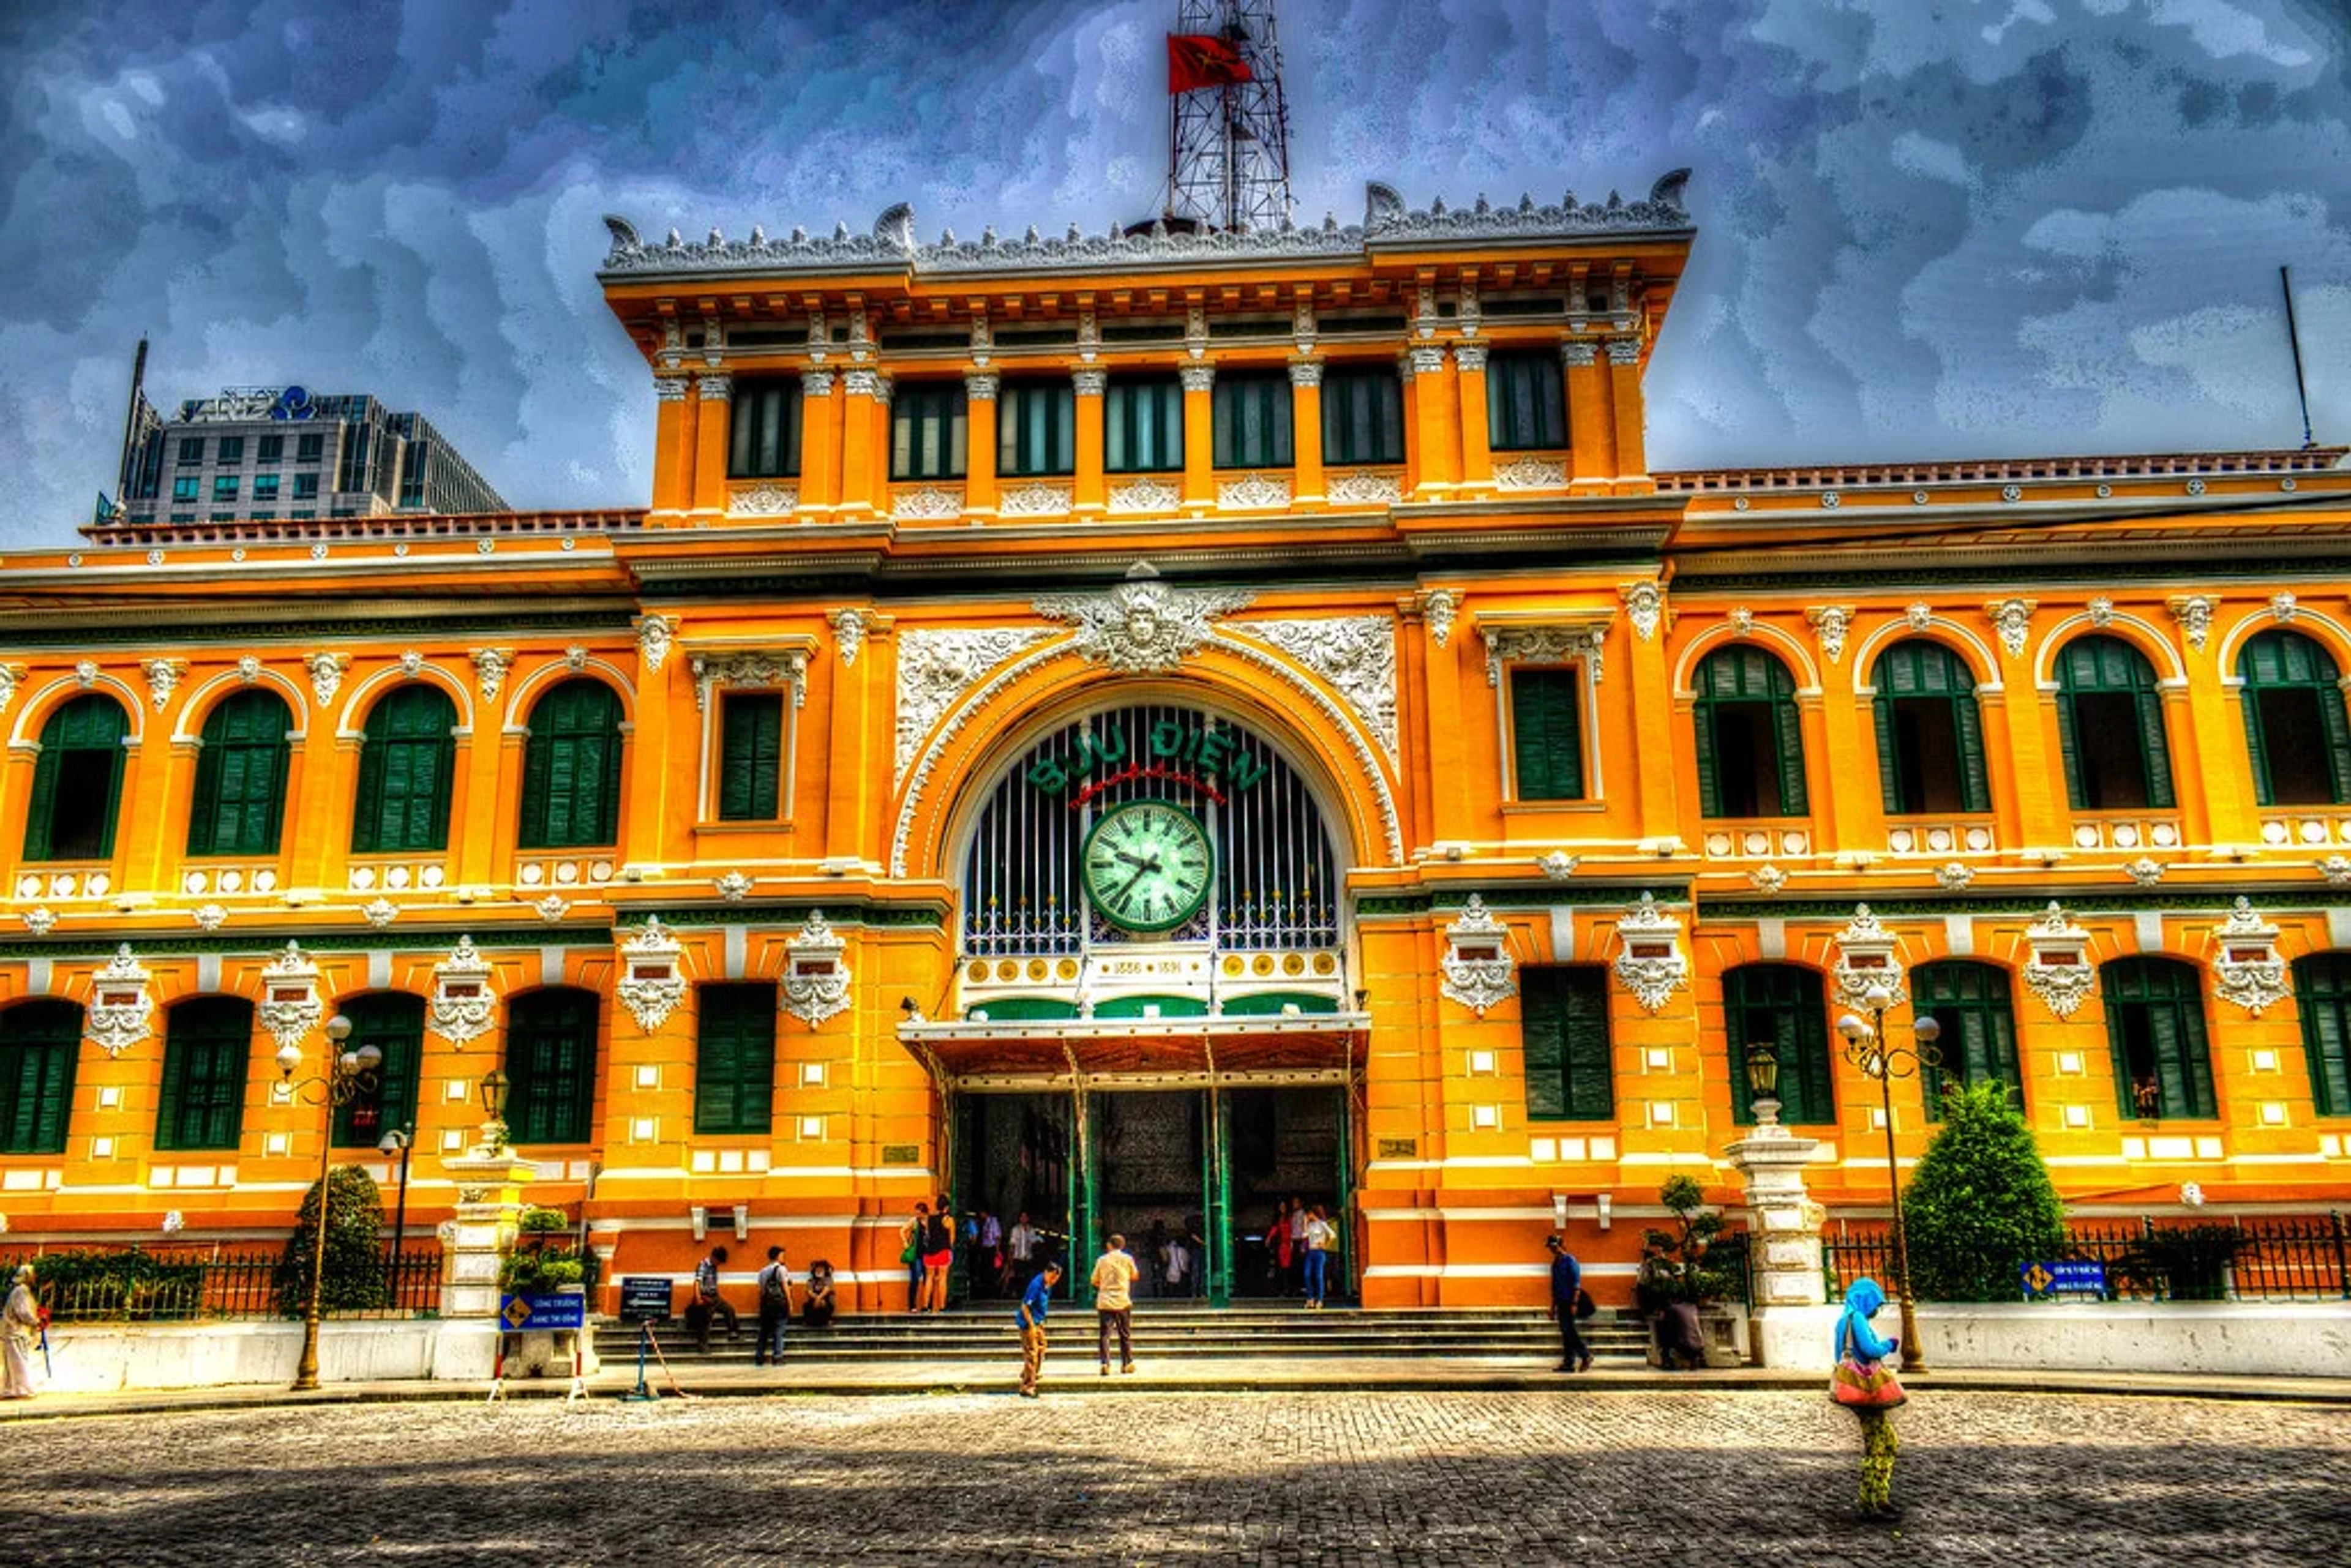 Saigon Central Post Office - A Unique Historical and Architectural Tourist Destination